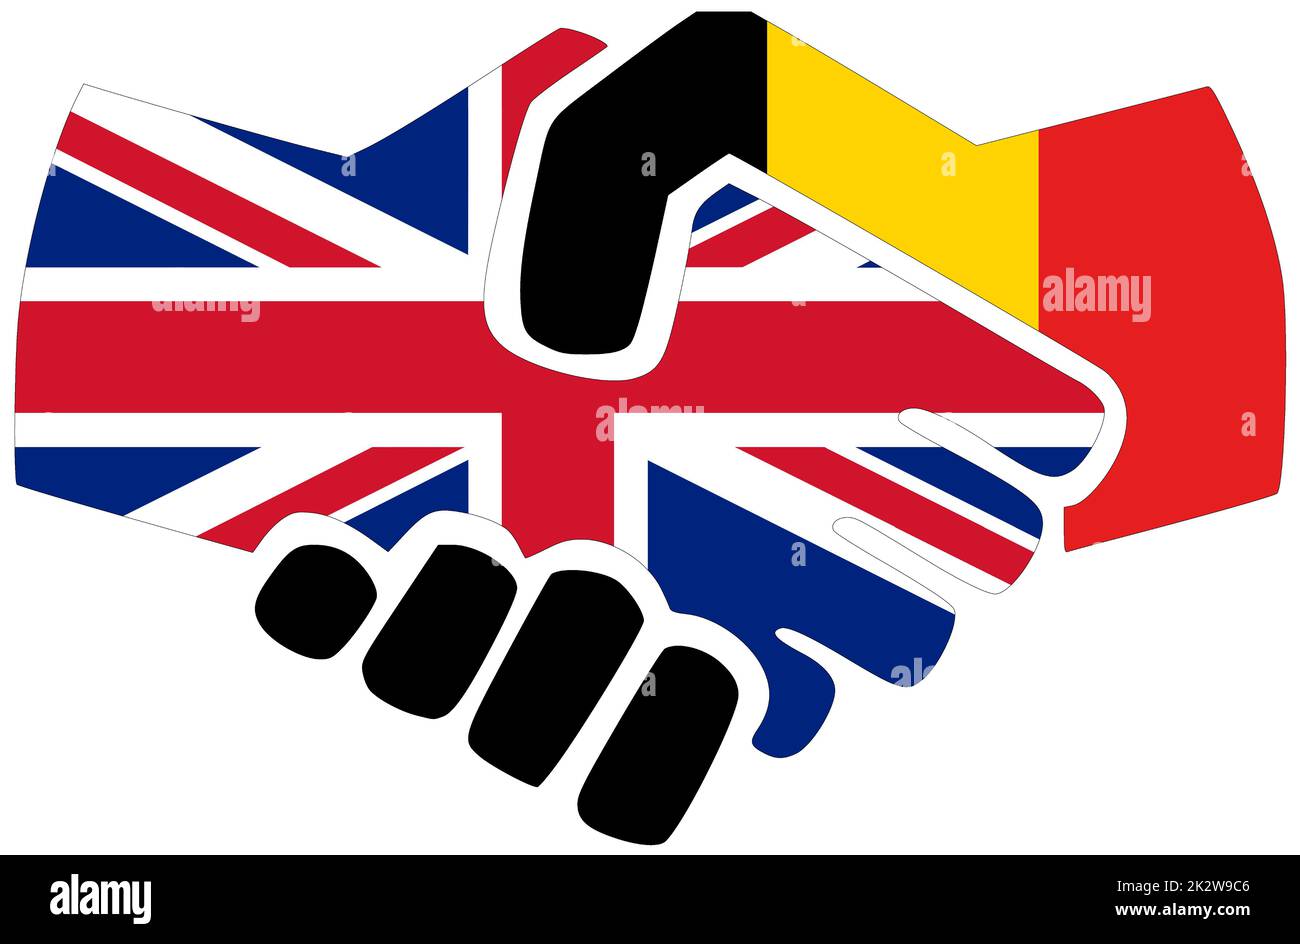 UK - Belgium : Handshake, symbol of agreement or friendship Stock Photo